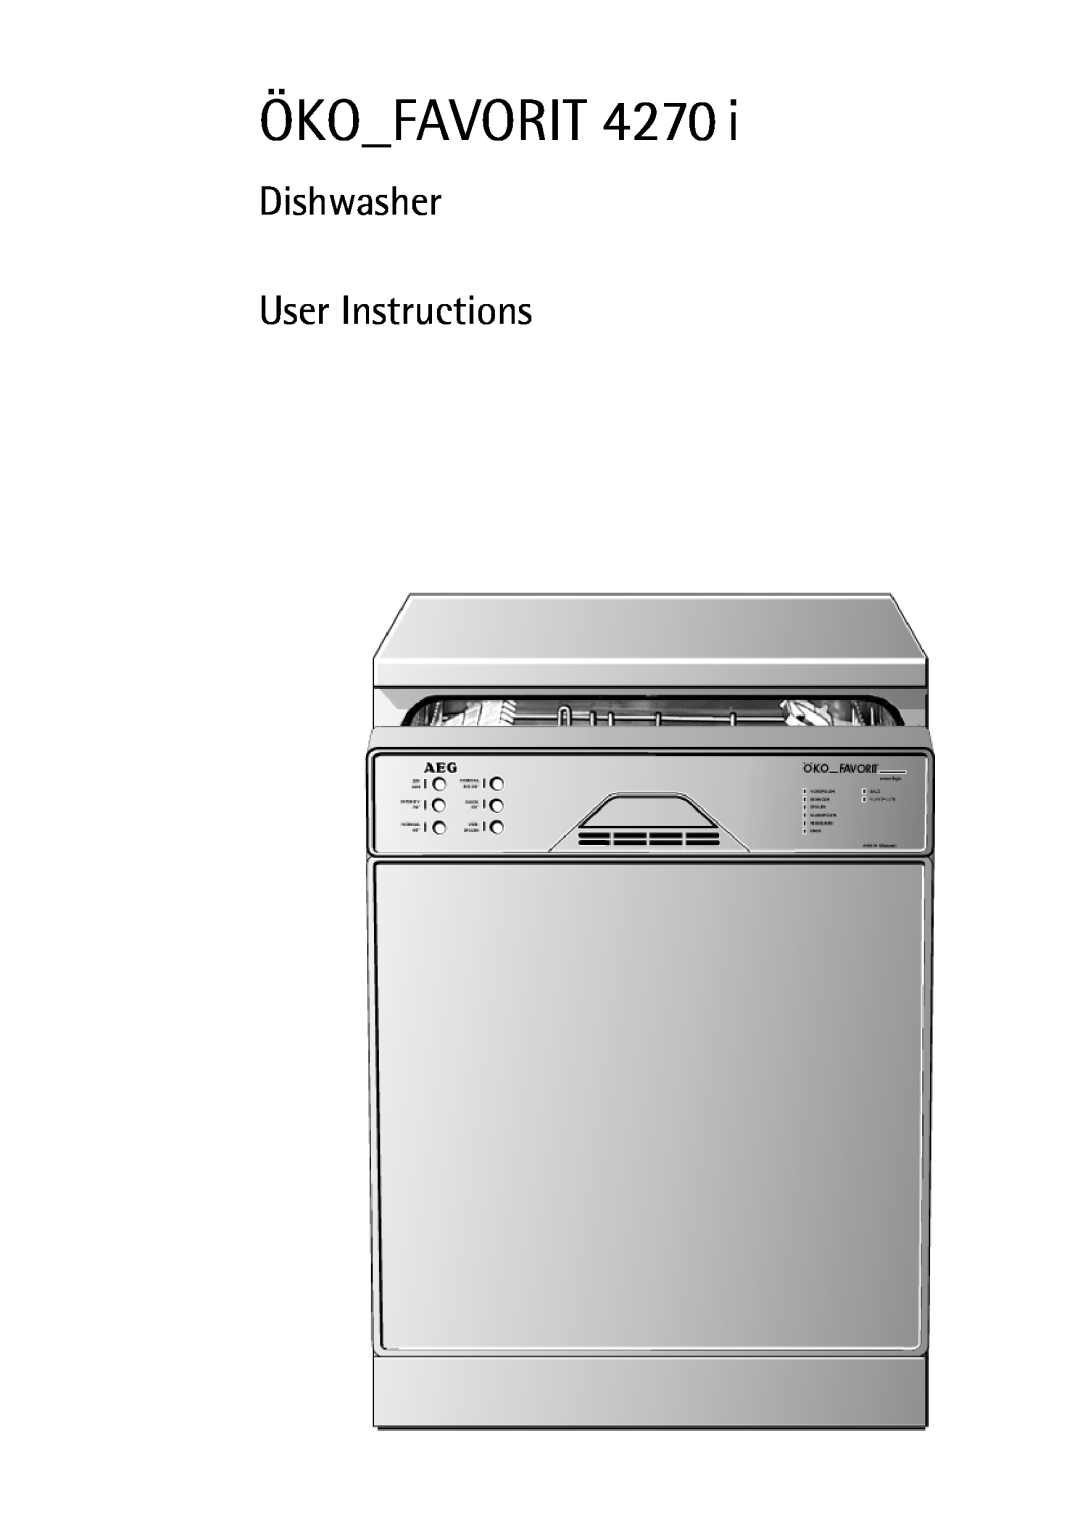 AEG 4270 I manual ÖKOFAVORIT 4270, Dishwasher User Instructions 